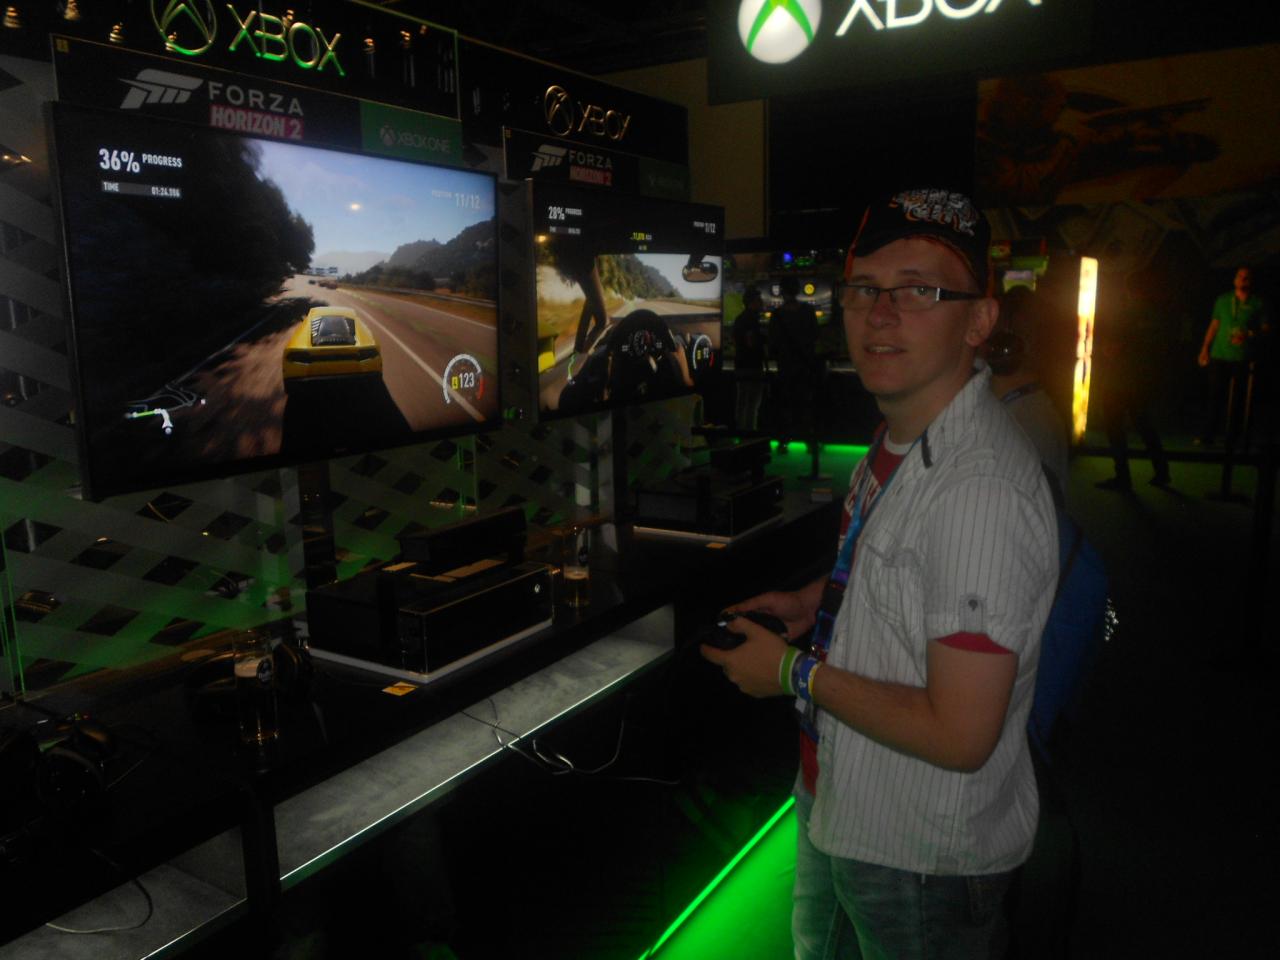 Graliśmy w Forza Horizon 2 - gameplay z nie do końca poważnym komentarzem